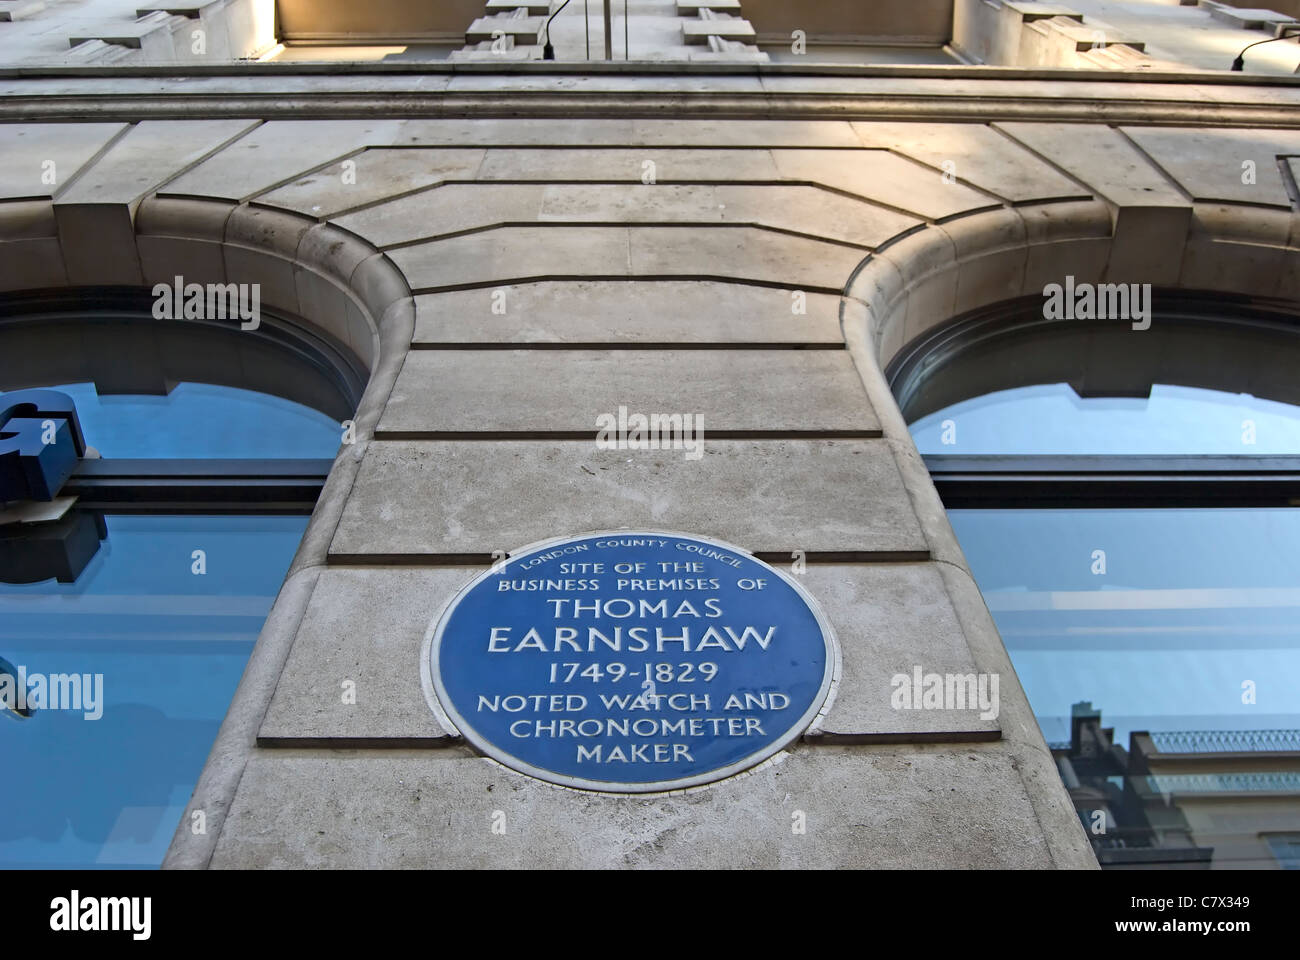 Targa blu segna il sito di ex locali commerciali di guardare e cronometro maker, thomas la Earnshaw, Londra, Inghilterra Foto Stock